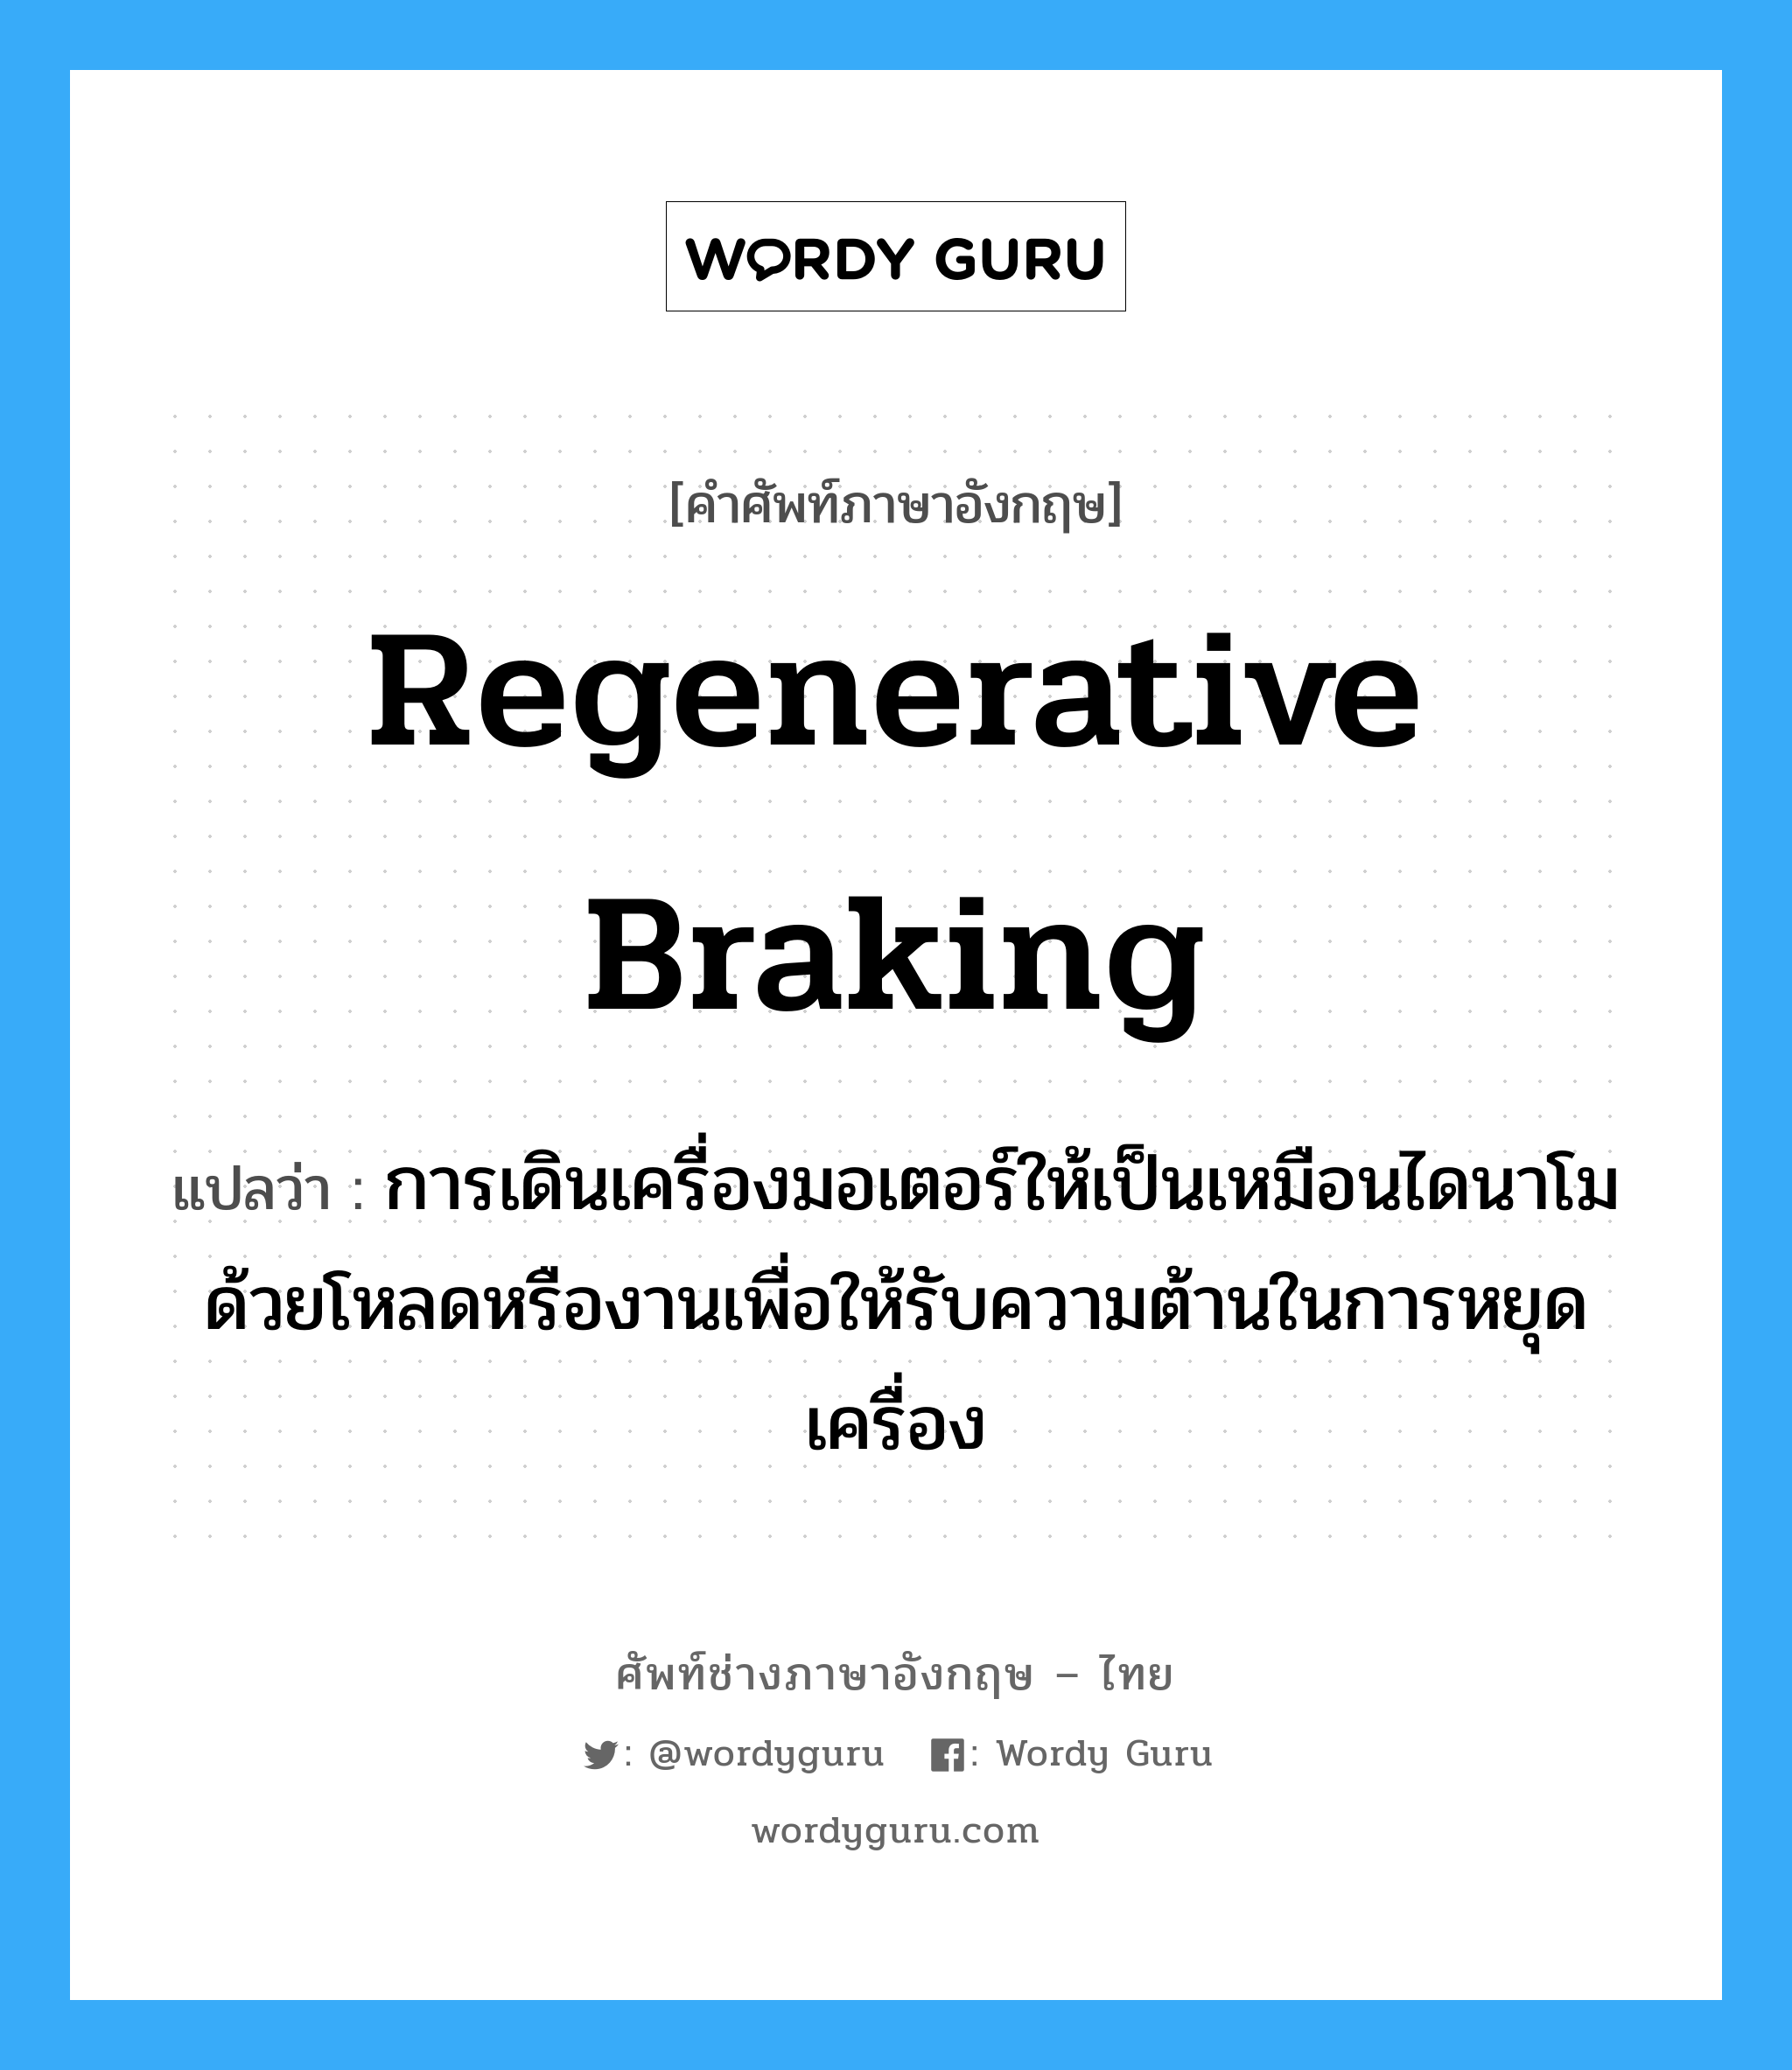 regenerative braking แปลว่า?, คำศัพท์ช่างภาษาอังกฤษ - ไทย regenerative braking คำศัพท์ภาษาอังกฤษ regenerative braking แปลว่า การเดินเครื่องมอเตอร์ให้เป็นเหมือนไดนาโมด้วยโหลดหรืองานเพื่อให้รับความต้านในการหยุดเครื่อง